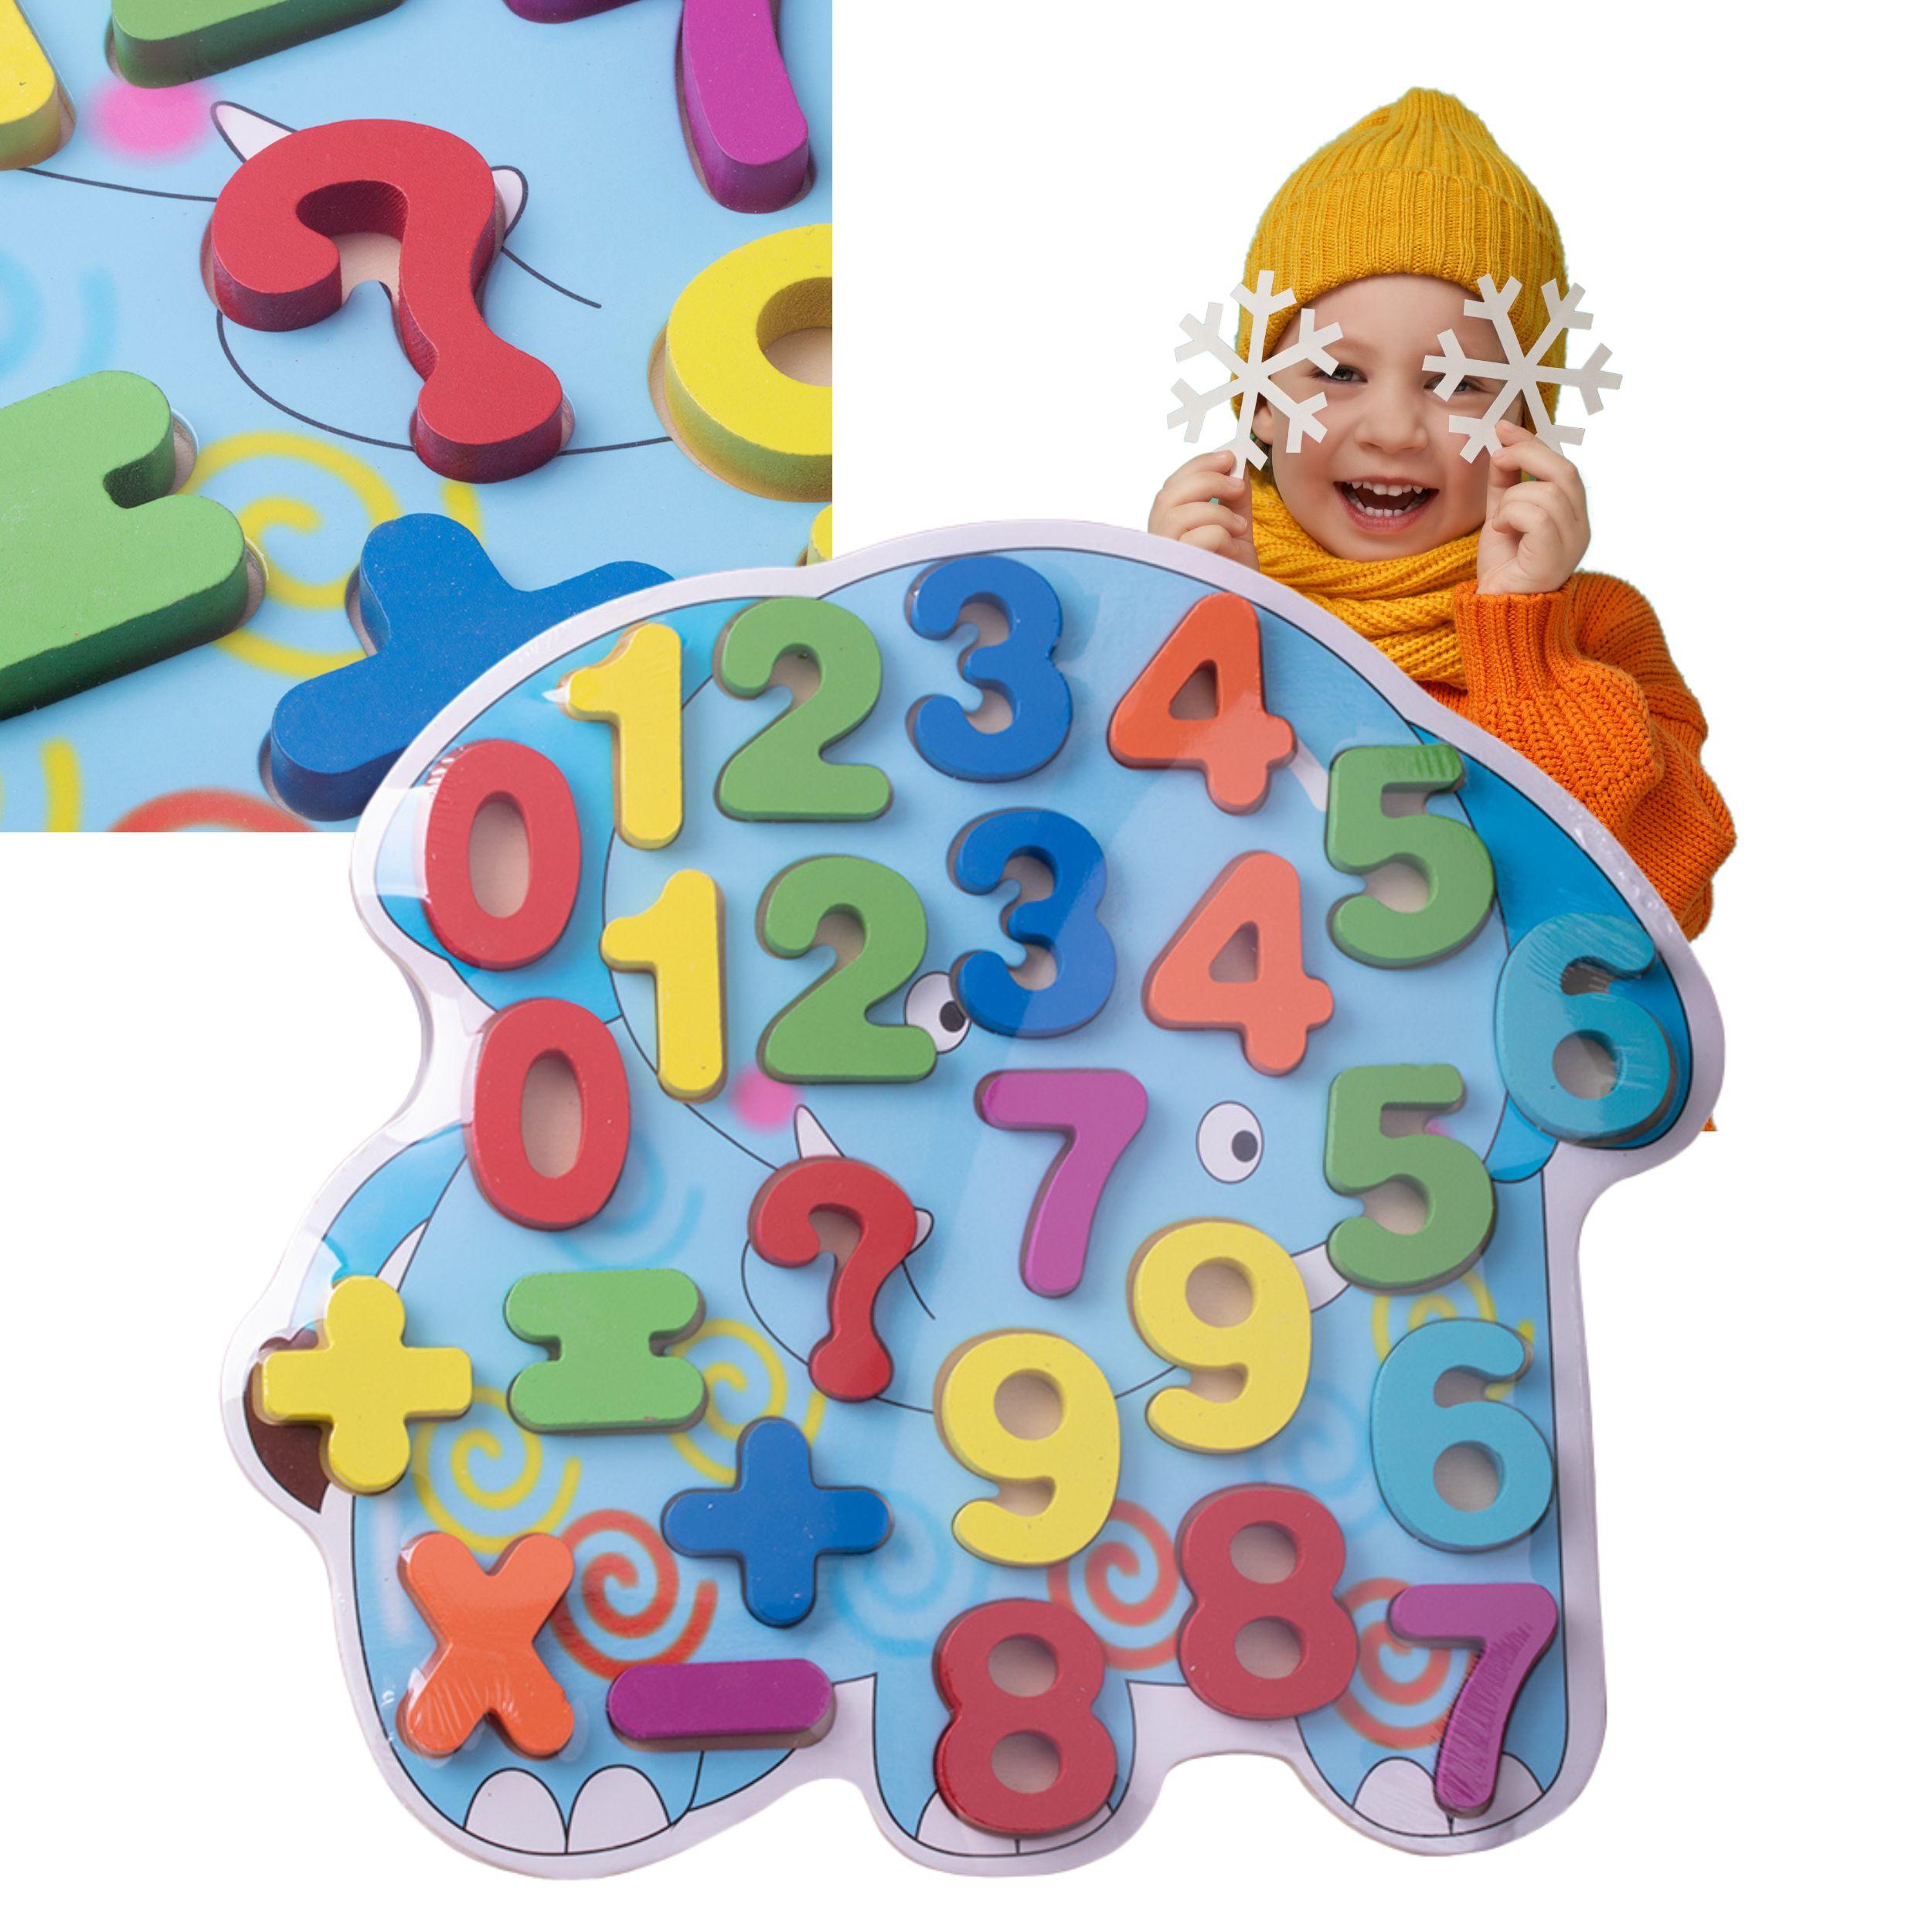 Puzzle for children "Digit"